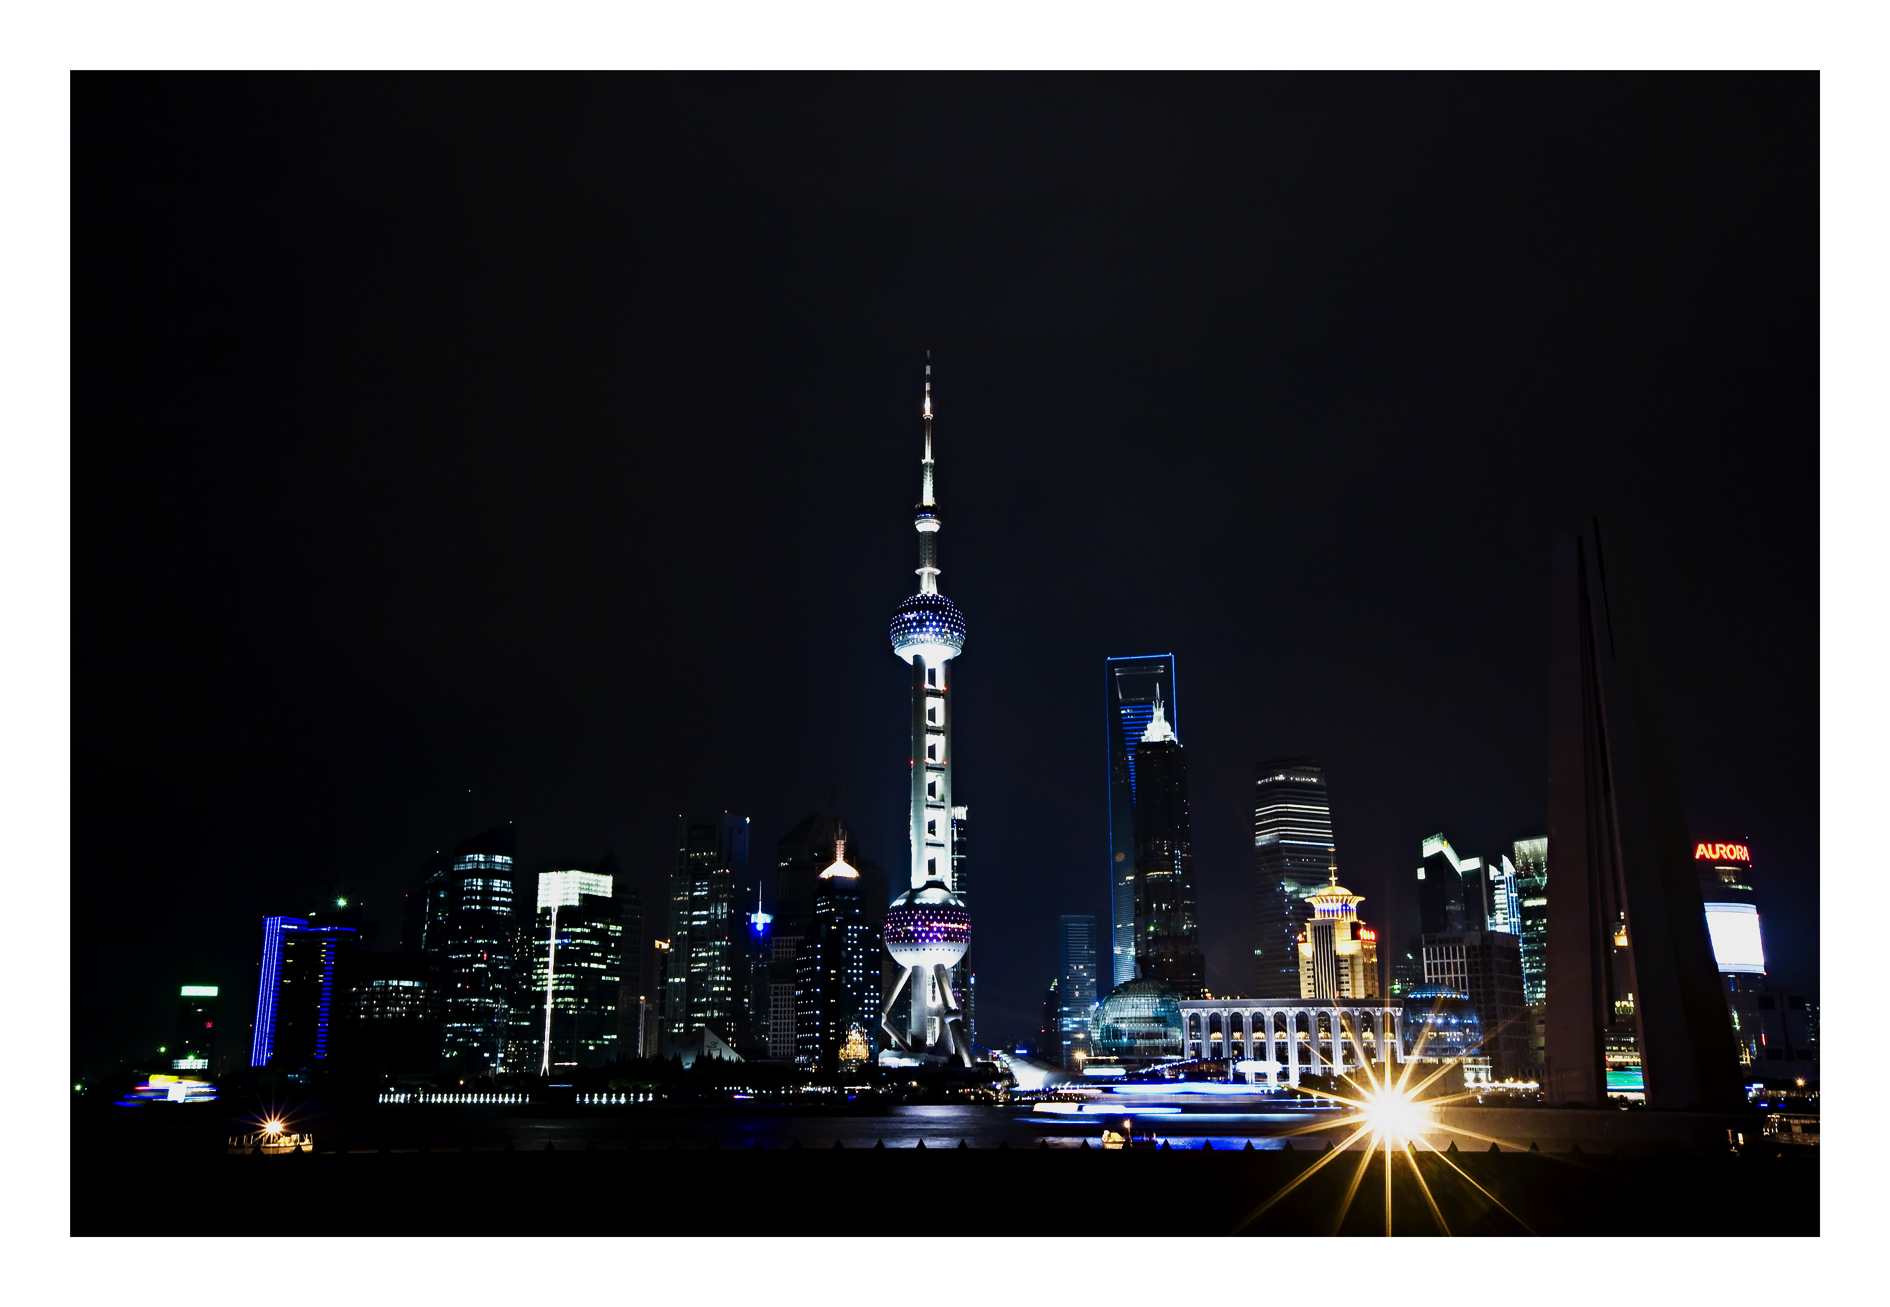 foto per il corso di fotografia urbana notturna con cavalletto, che ritrae lo skyline del quartiere finanziario e della borsa di Shanghai, il Pudong New Area